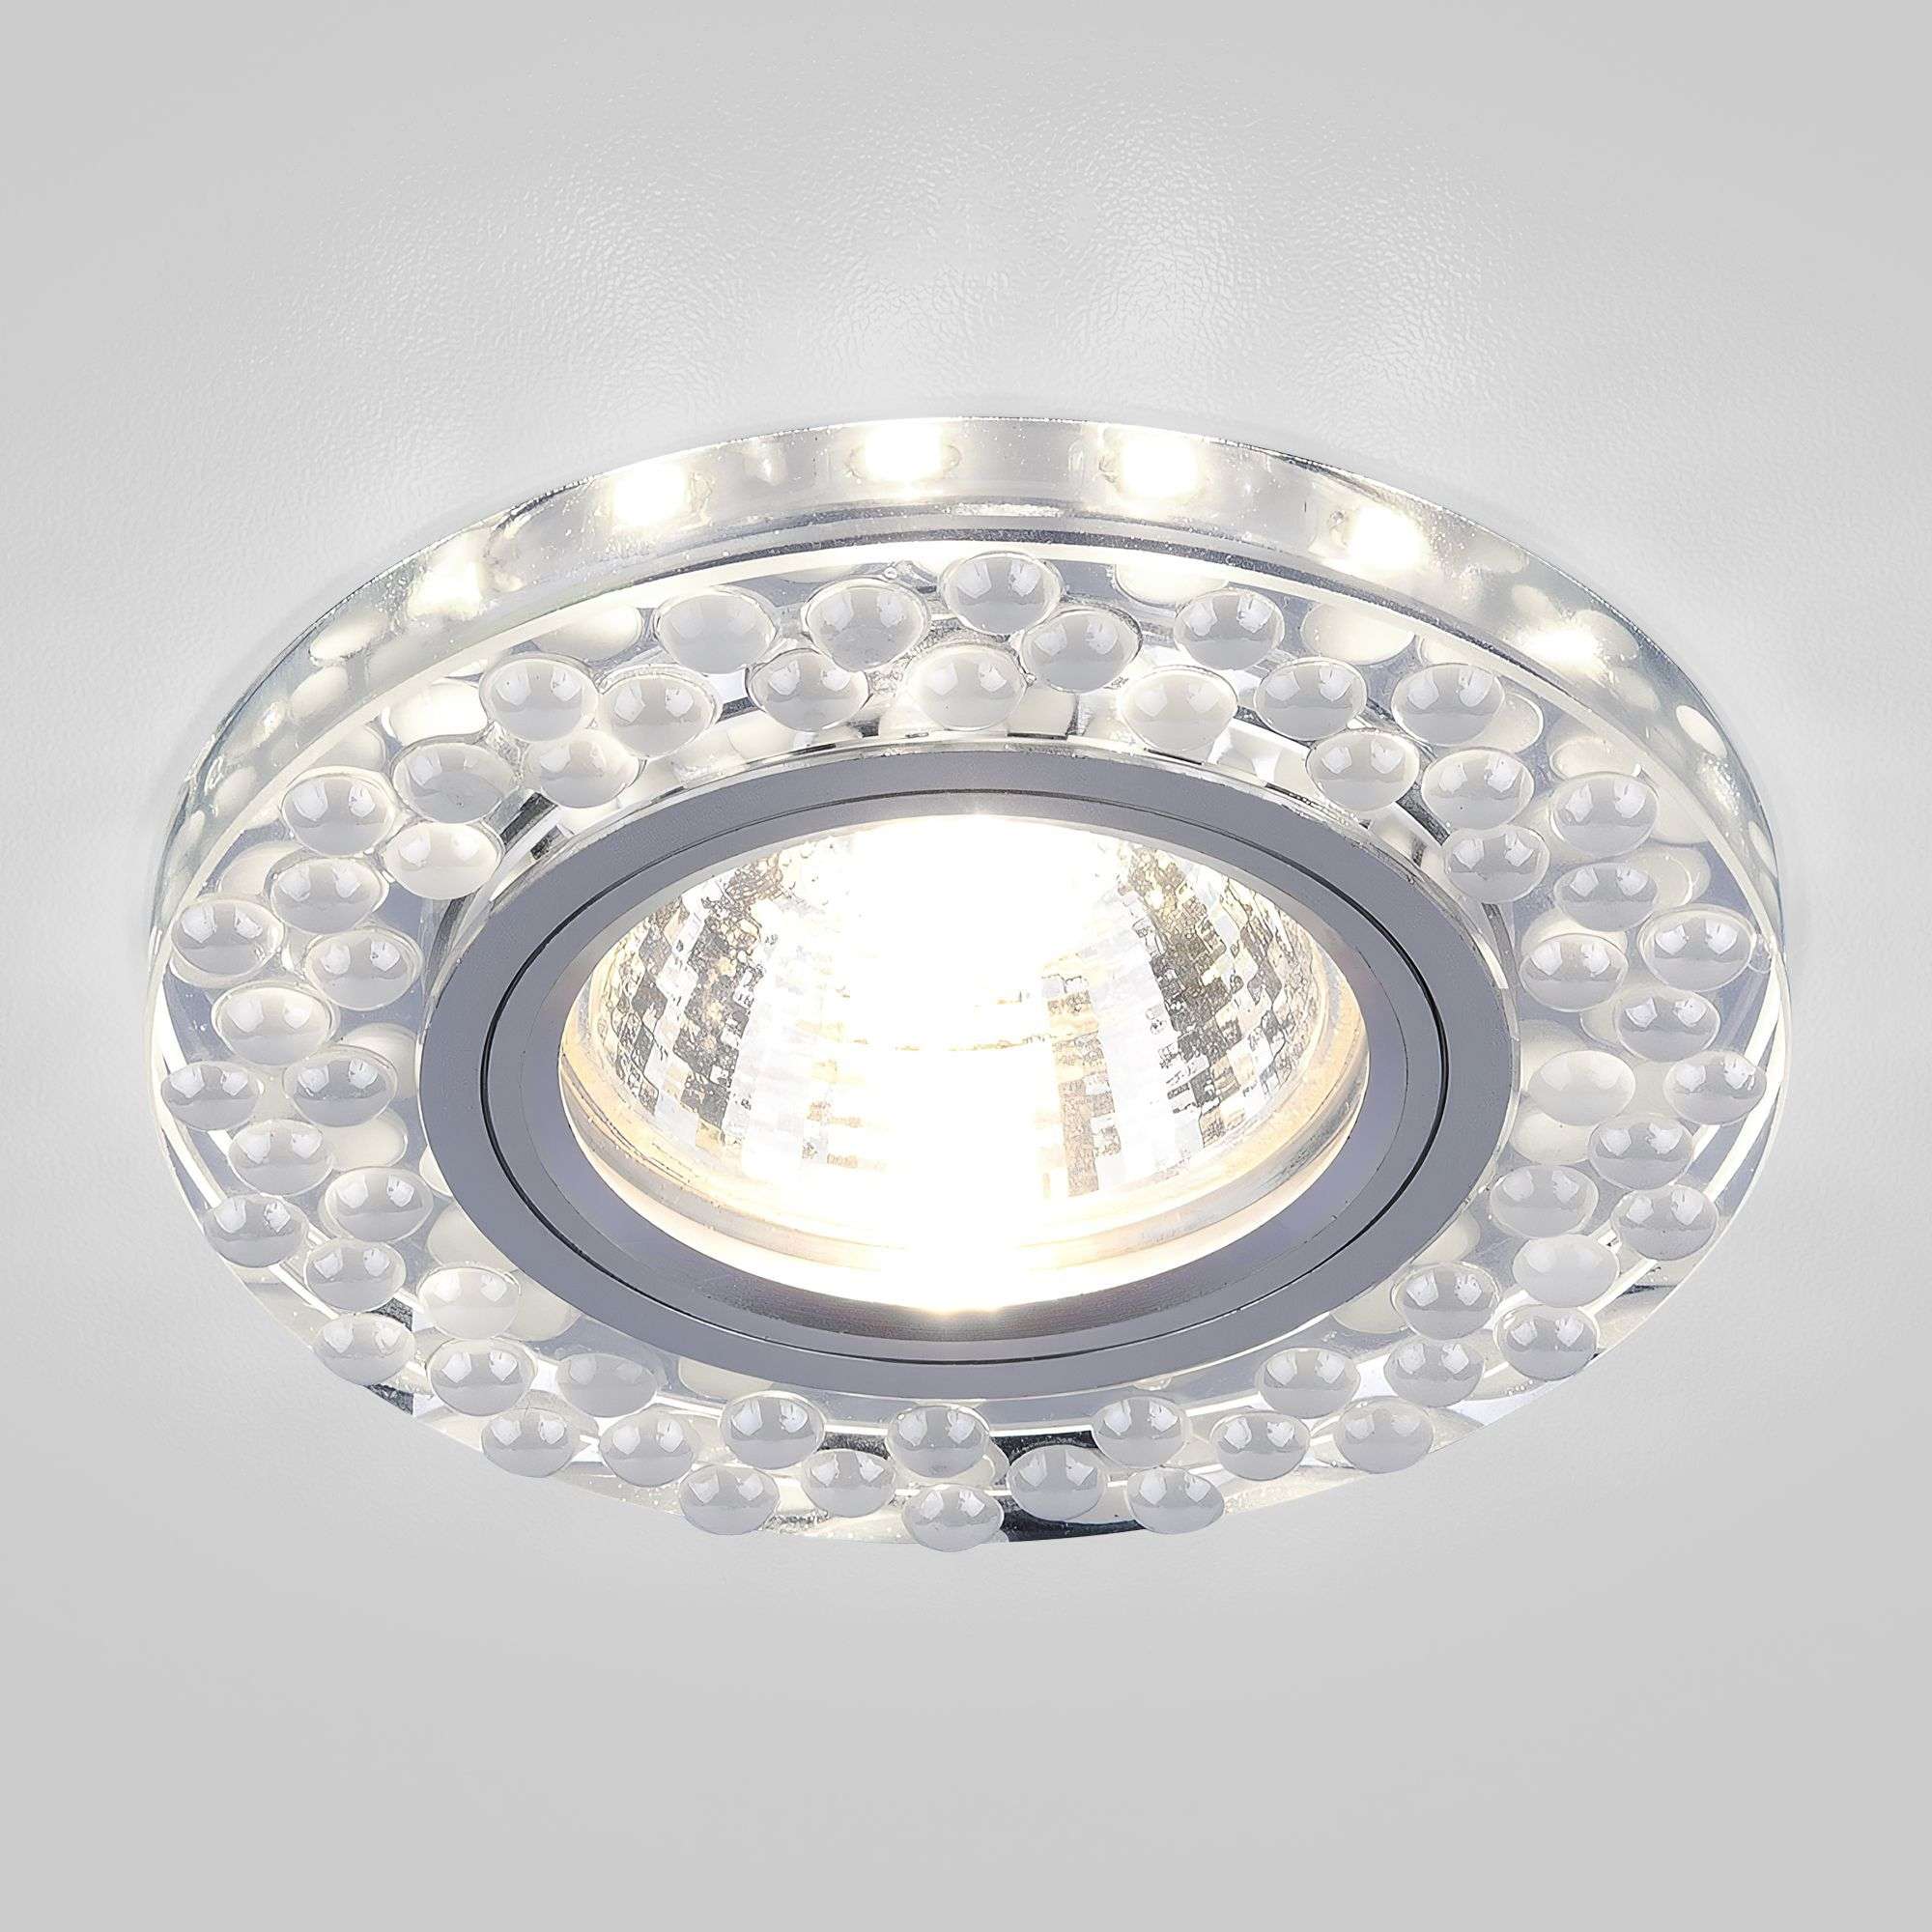 Встраиваемый точечный светильник с подсветкой 2194 MR16 SL/WH зеркальный/белый